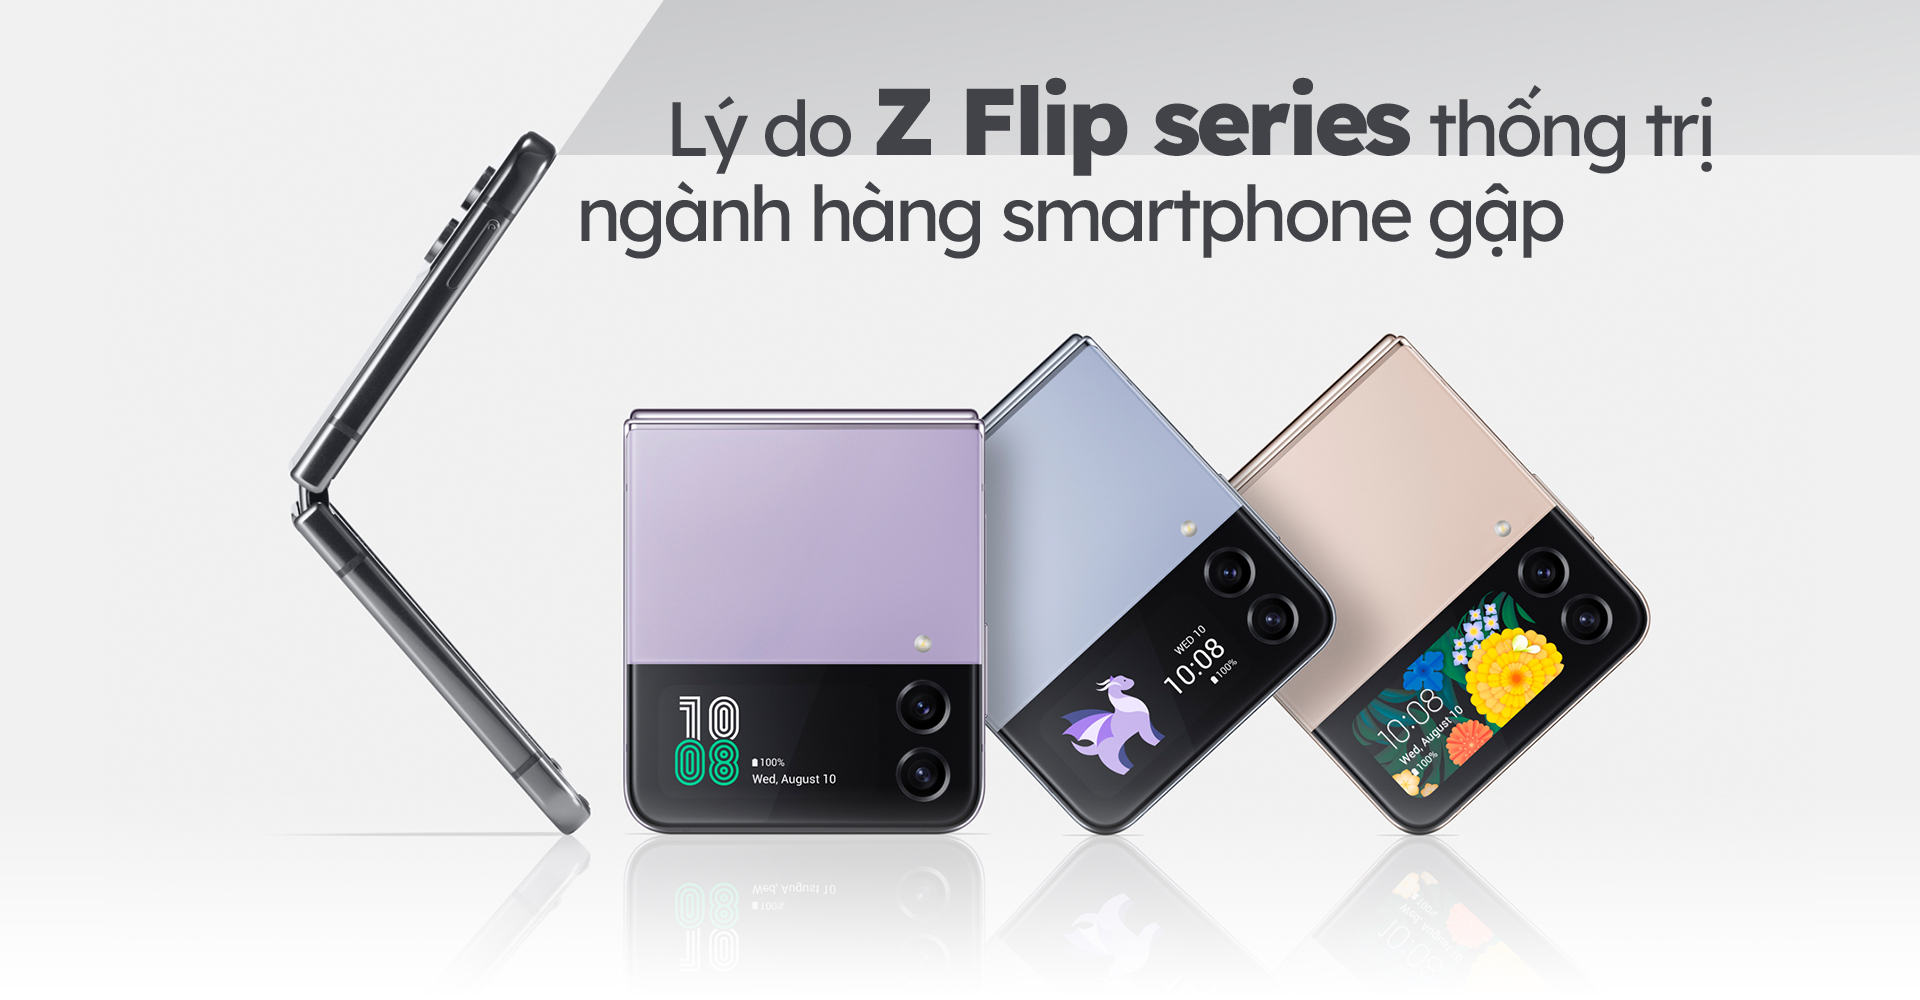 Lý do Z Flip Series thống trị ngành hàng smartphone gập